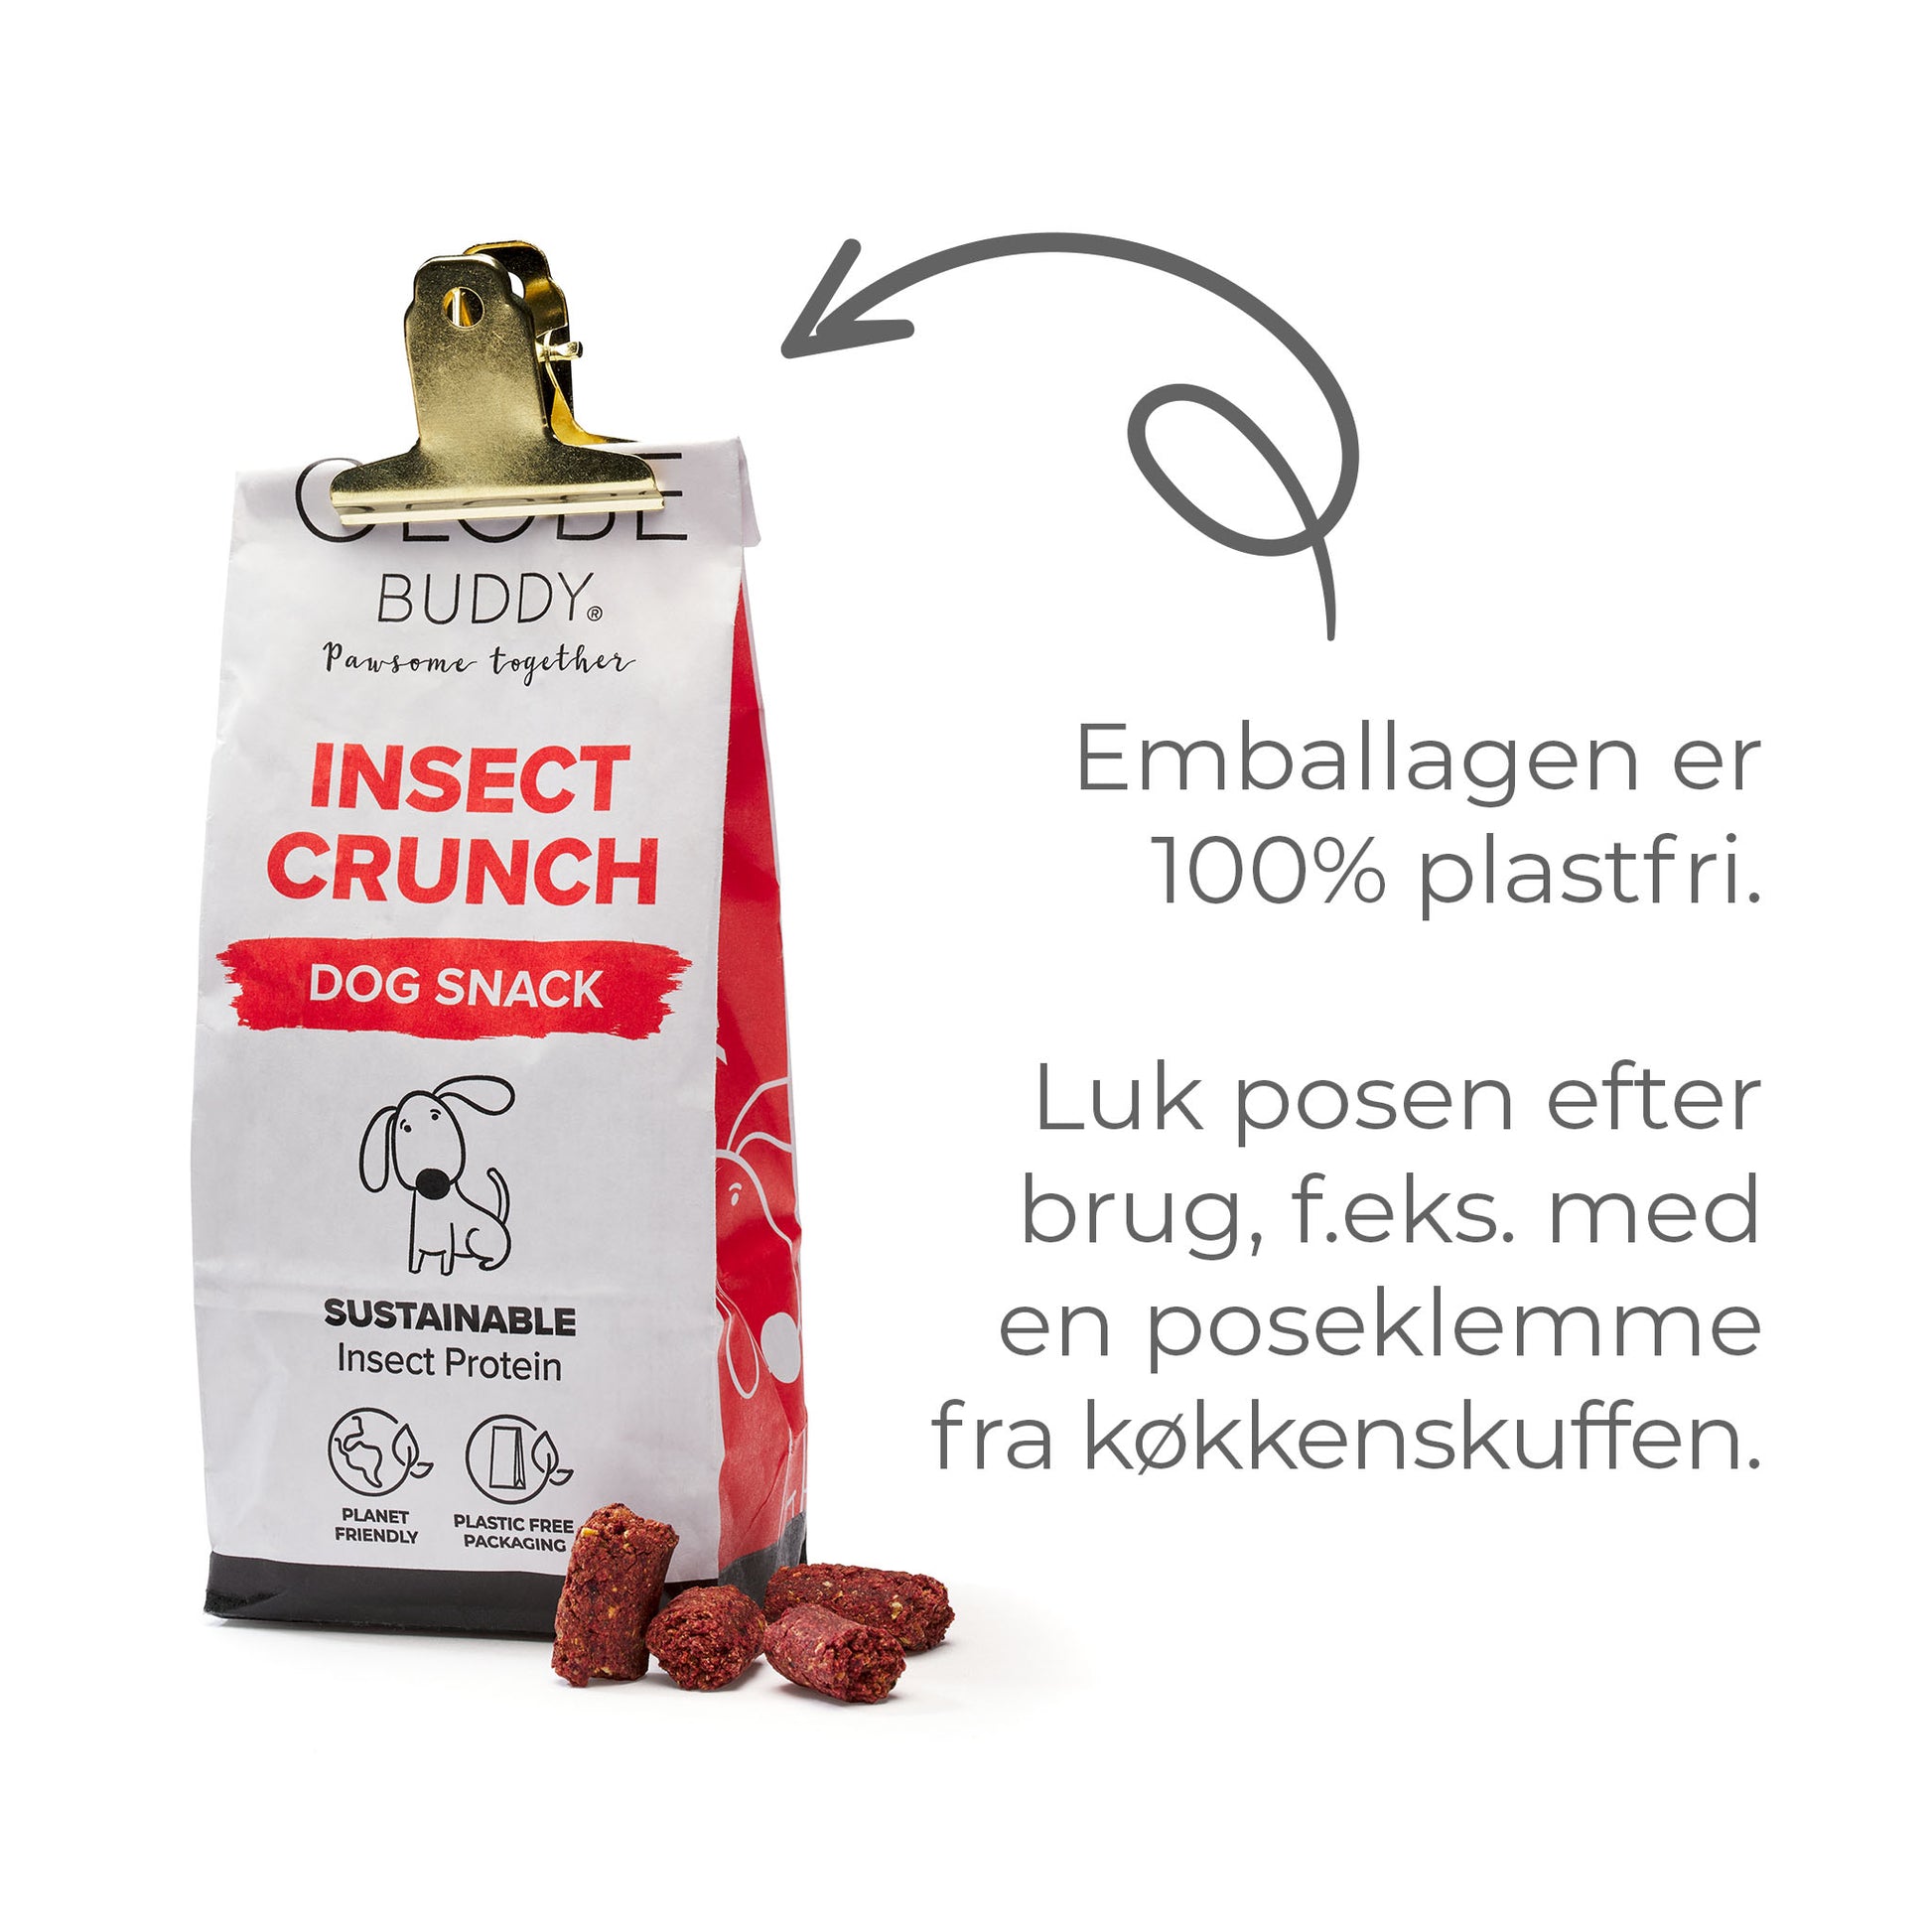 Globe Buddy Insect Crunch - godbidder til hunde, i 100% plastfri emballage. Bæredygtigt og miljøvenligt.